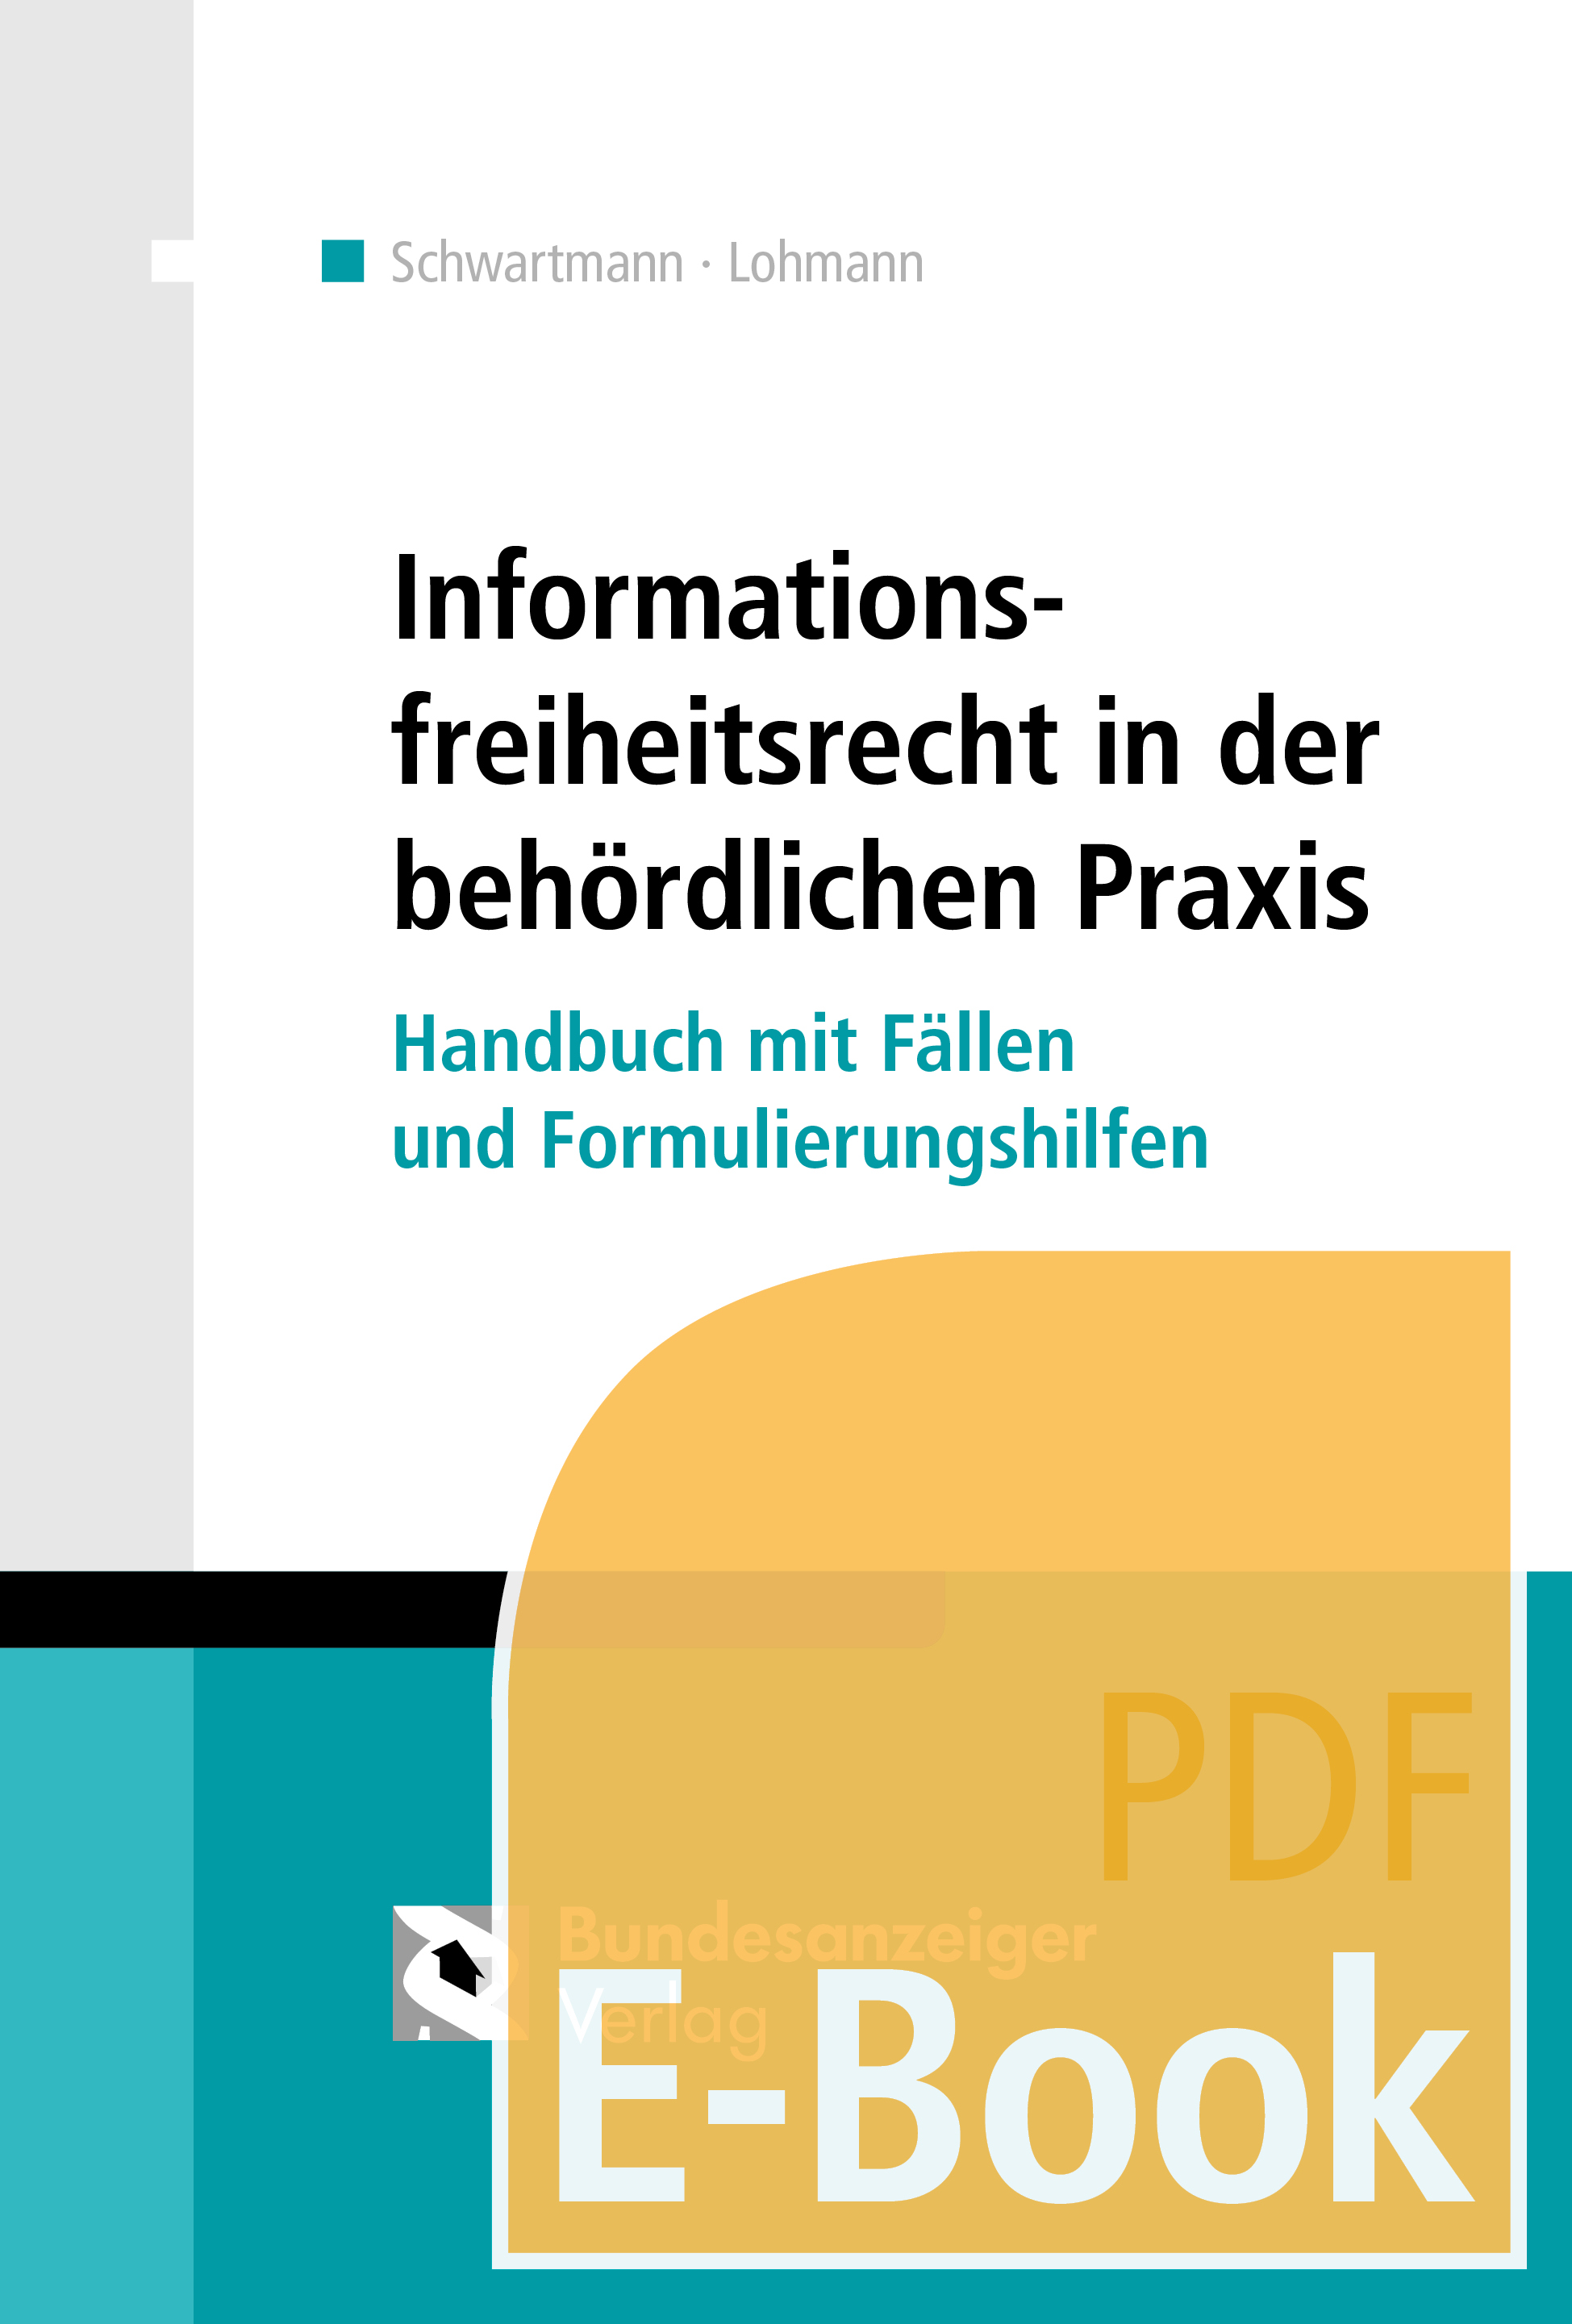 Informationsfreiheitsrecht in der behördlichen Praxis (E-Book)